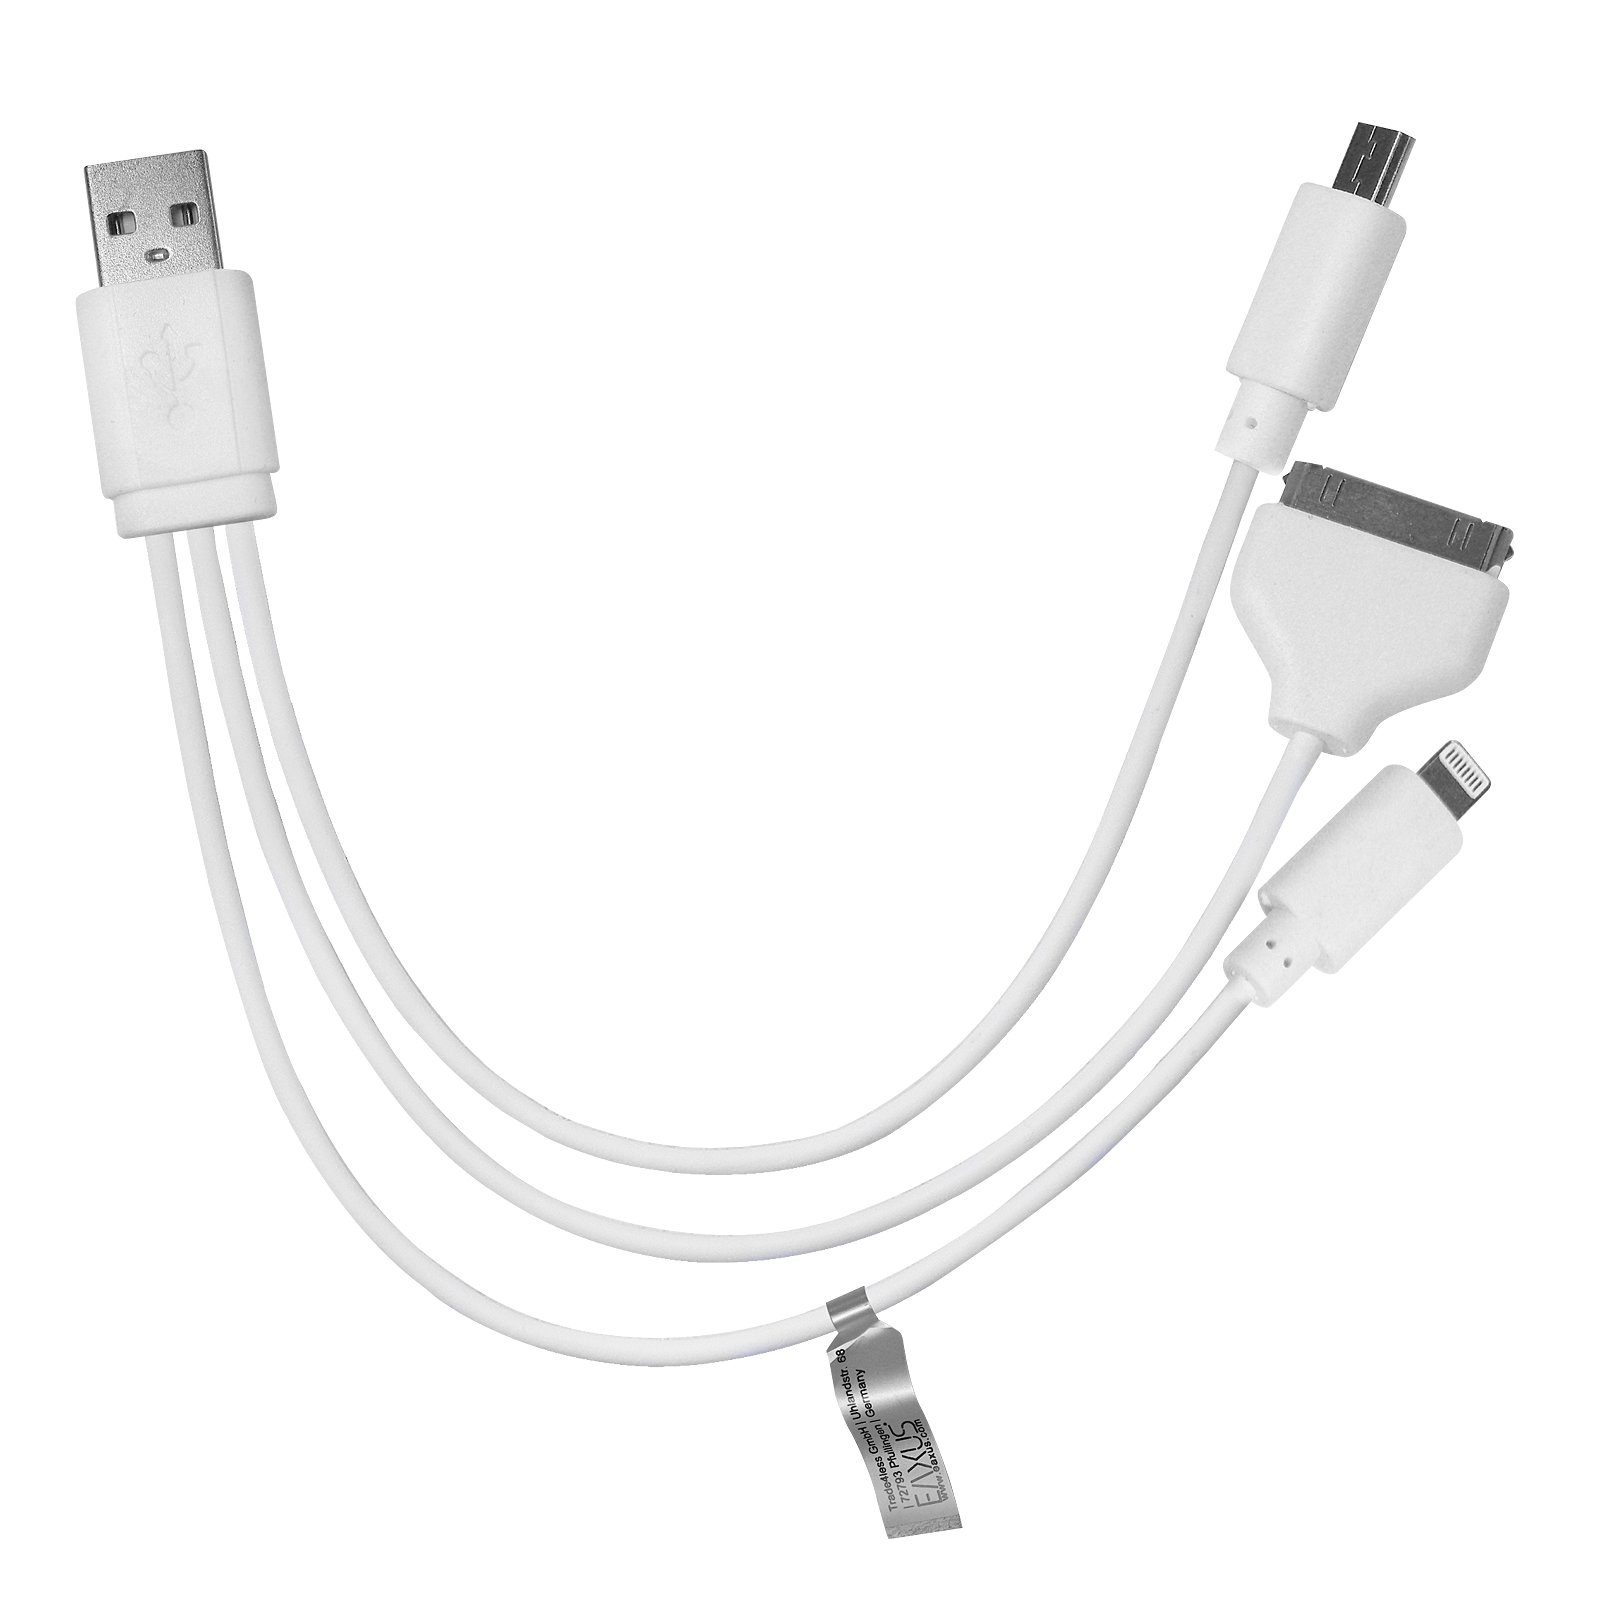 EAXUS 3in1 USB-Kabel mit microUSB, 8-polig und 30-polig USB-Kabel, microUSB, 8-pin, 30-pin, (13 cm), Geeignet für iPhone, iPad, iPod und USB-Zubehör